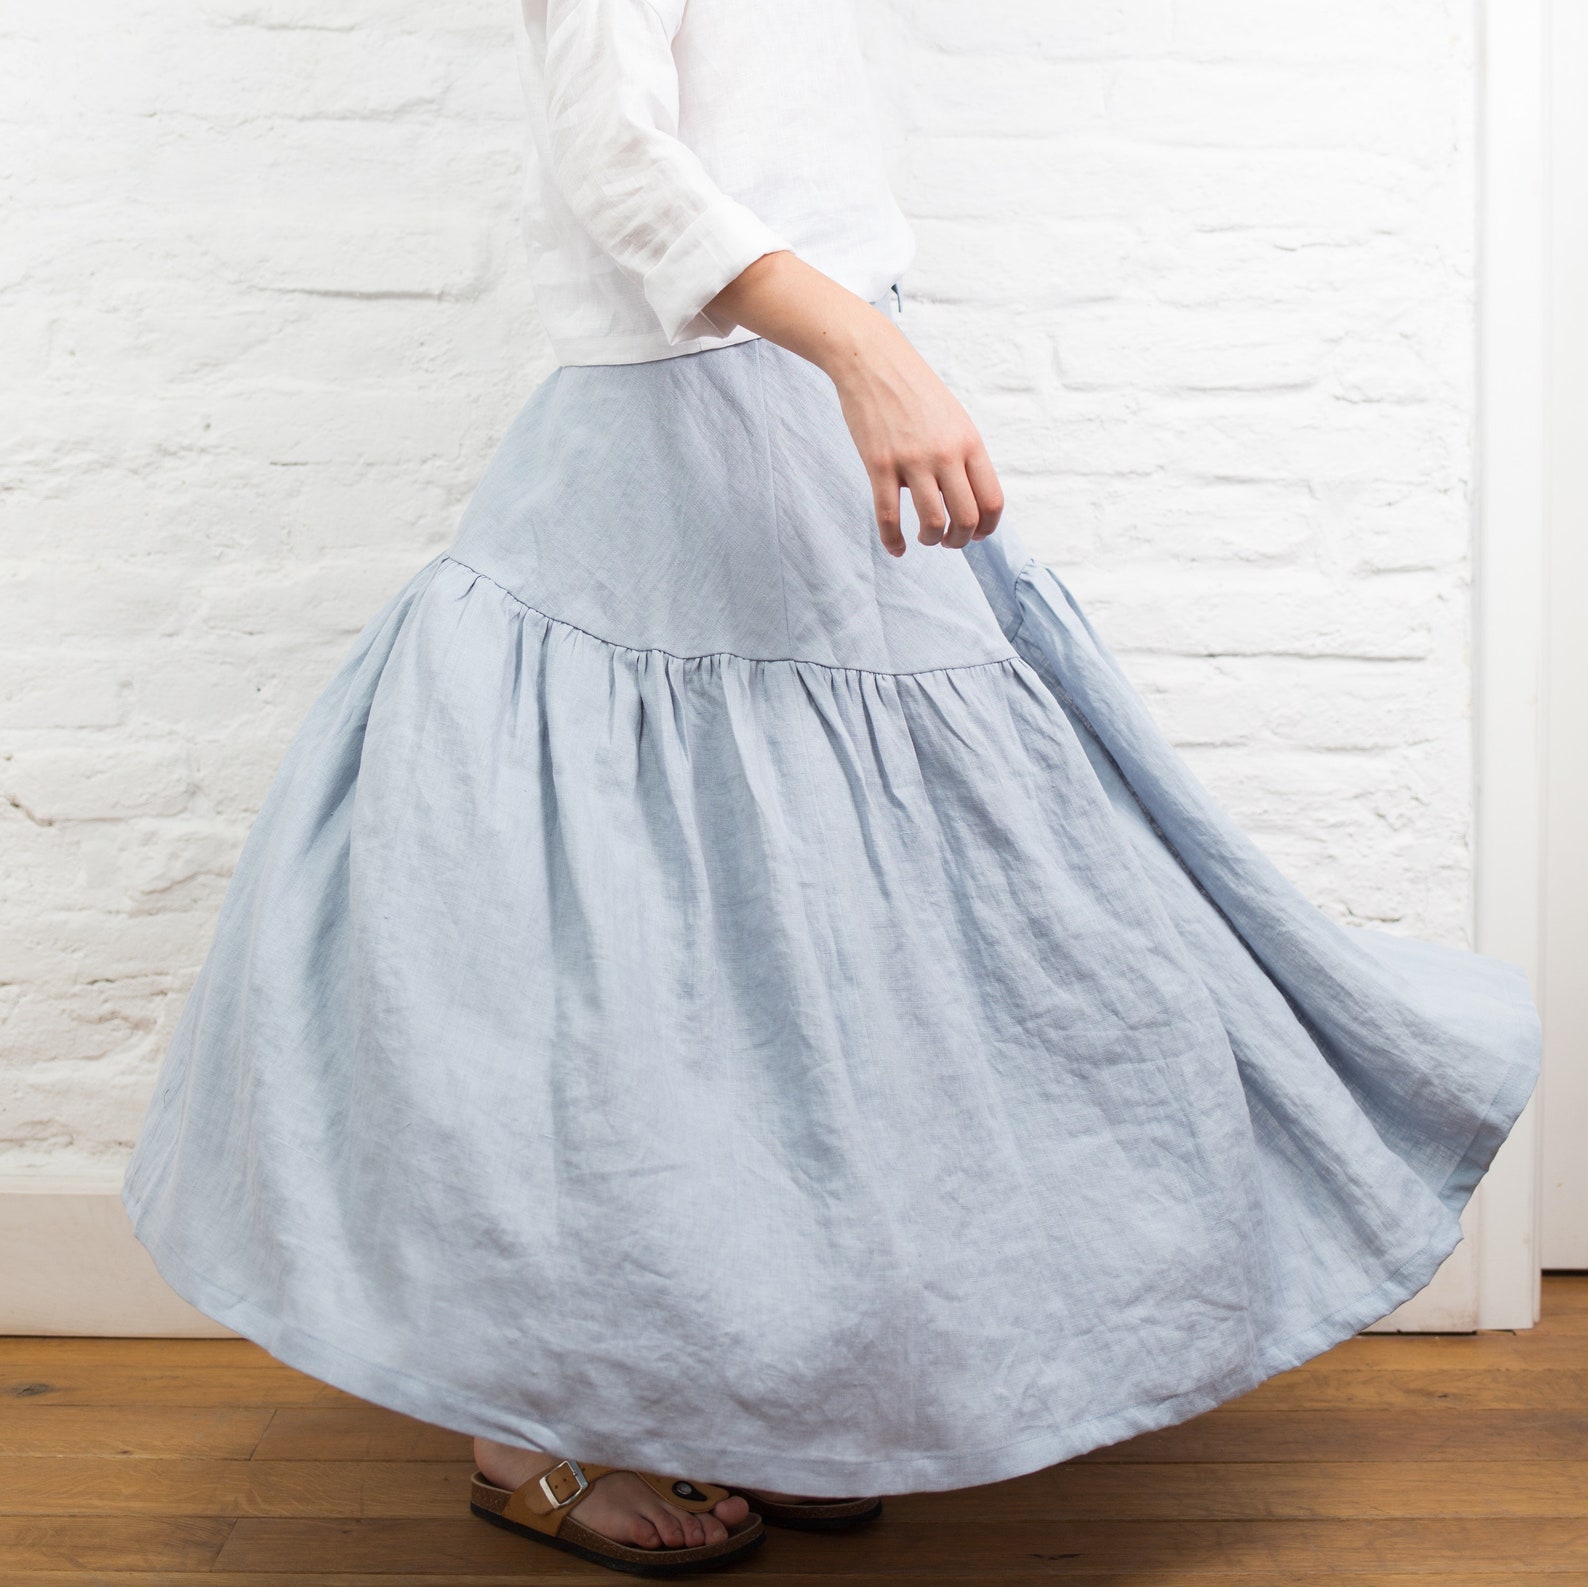 Linen Wrap Skirt MELODY Long Linen Skirt Ruffled Skirt long | Etsy